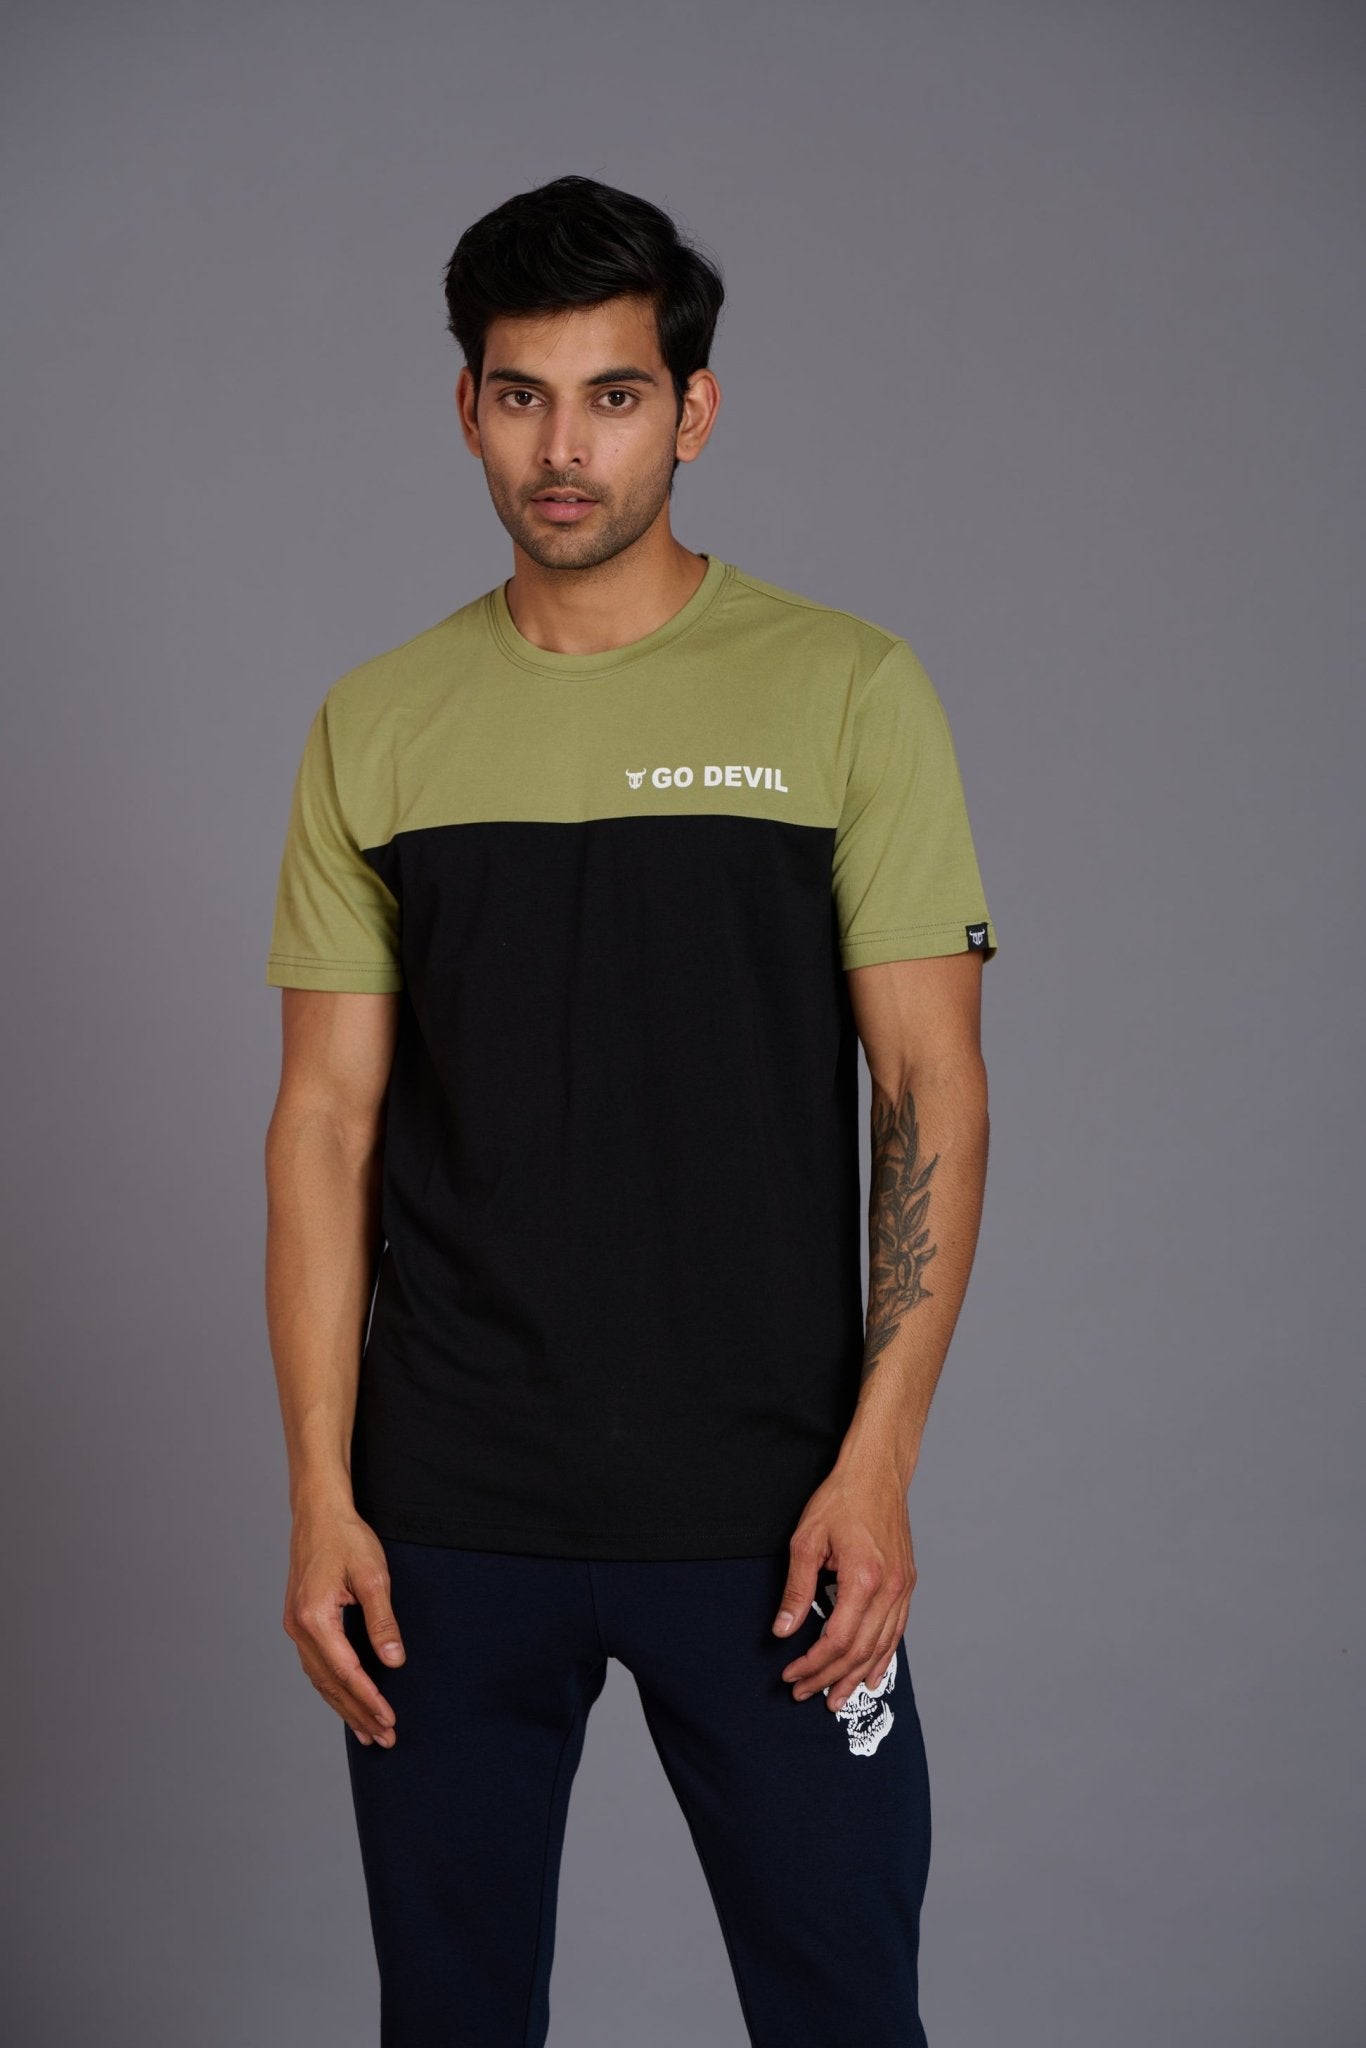 Go Devil Printed Green & Black T-Shirt for Men - Go Devil